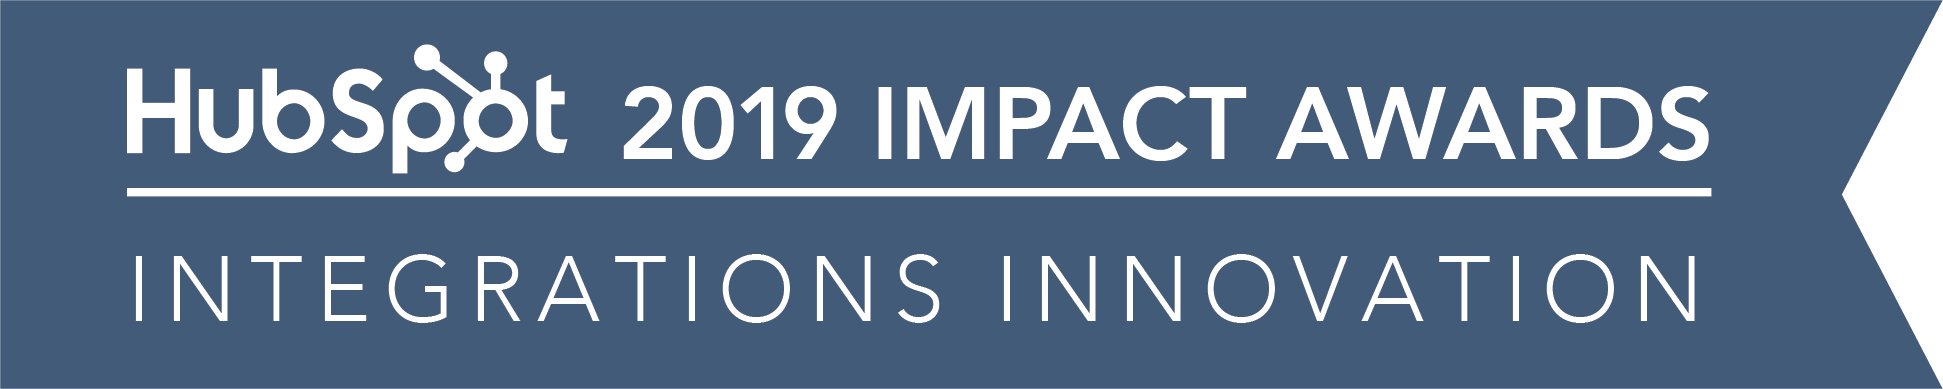 Hubspot_ImpactAwards_2019_IntegrationsInnovation-02